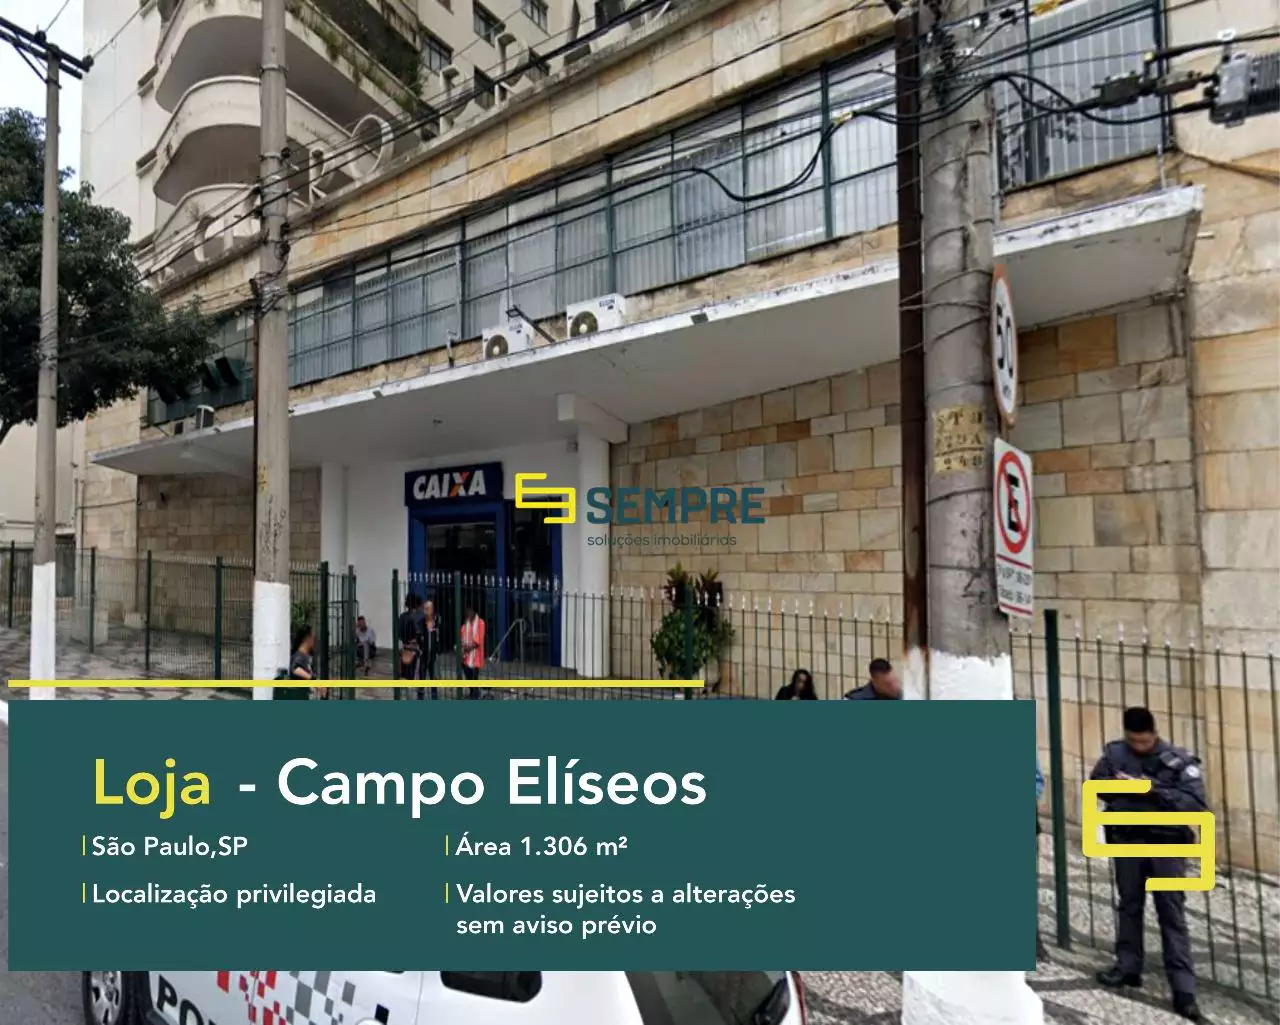 Loja para alugar no Campo Elíseos em São Paulo, em excelente localização. O estabelecimento comercial conta com área de 1.306 m².